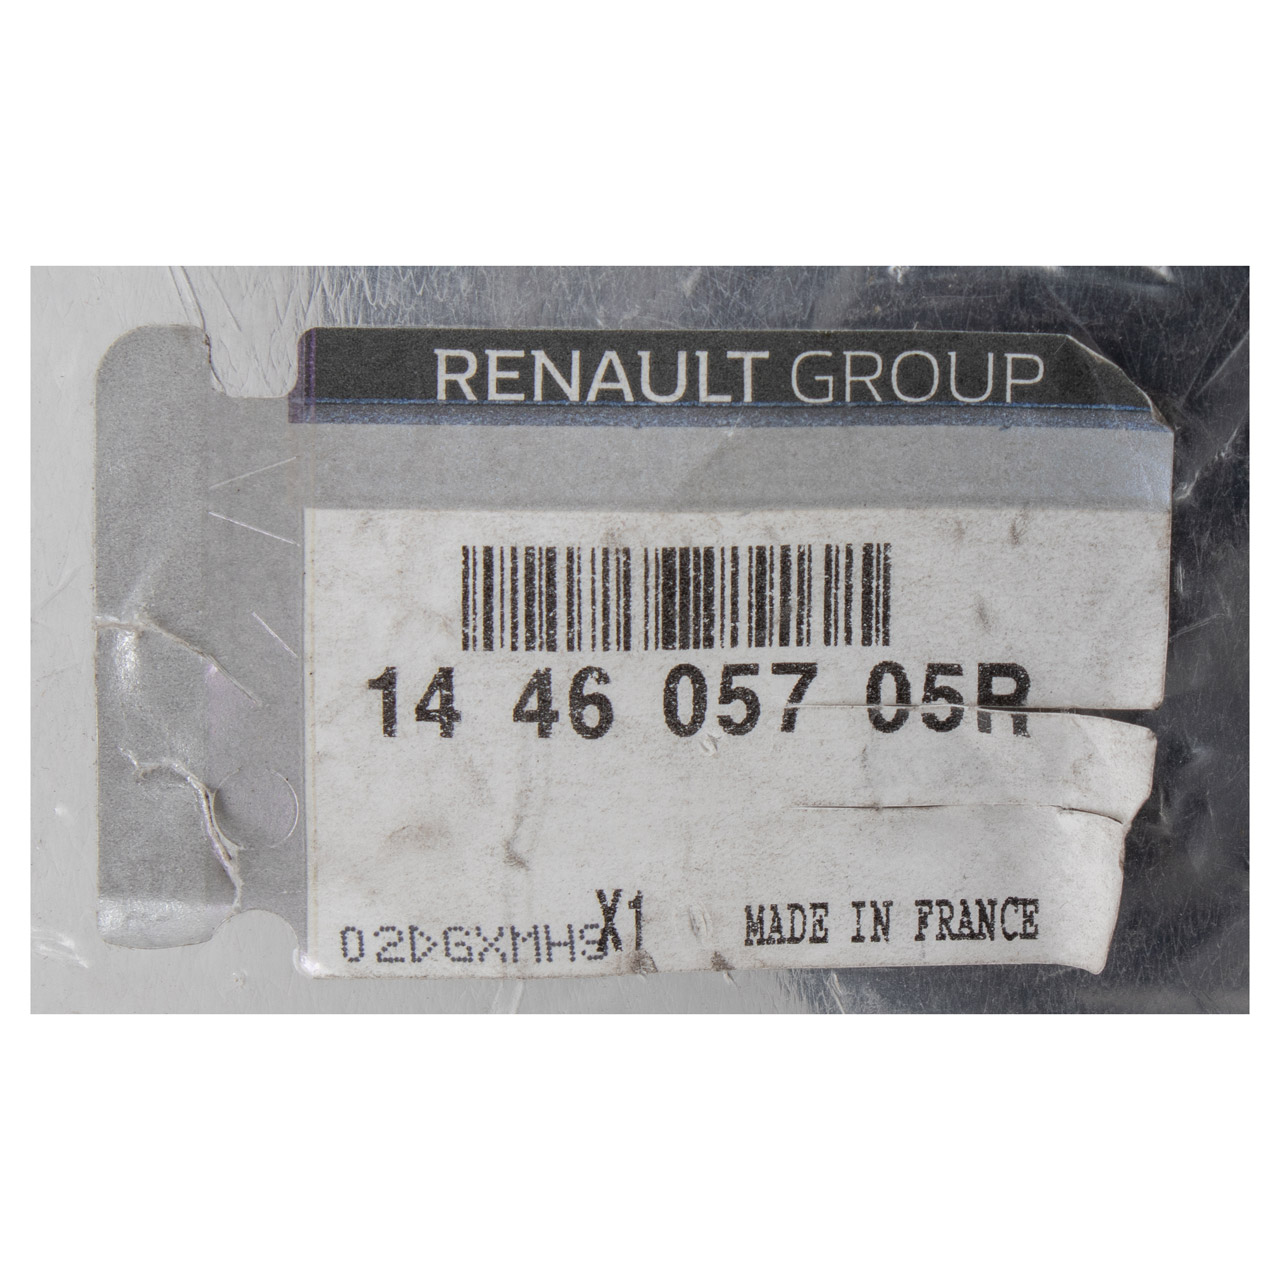 ORIGINAL Renault Ladeluftschlauch Turboschlauch Megane 3 Scenic 3 1.6 dCi 144605705R